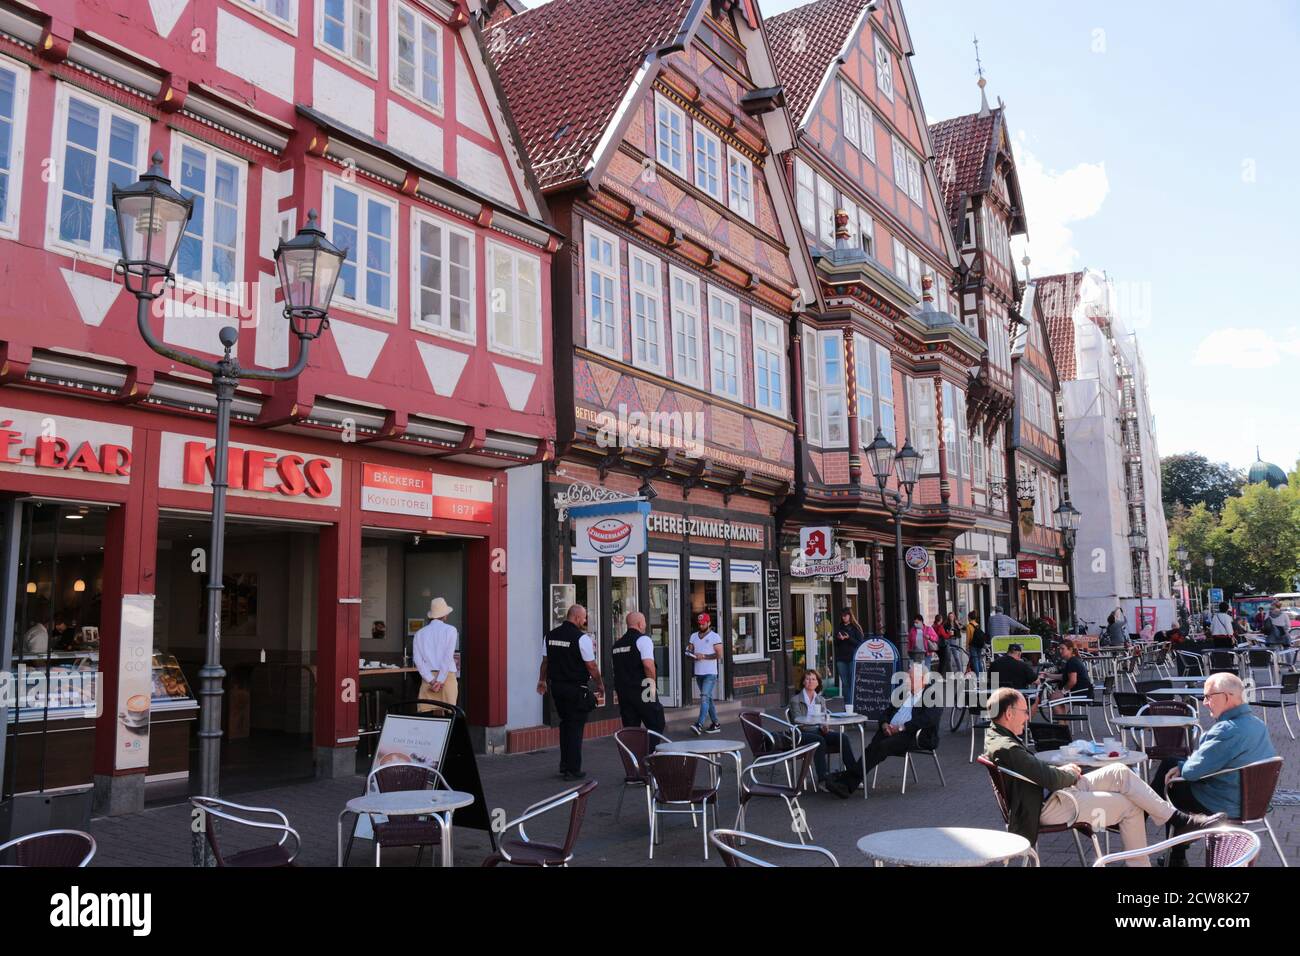 Fußgängerzone mit schönen alten Fachwerkhäusern in der historischen Stadt Celle. Das älteste historische Haus stammt aus dem Jahr 1526. Norddeutschland, Europa Stockfoto